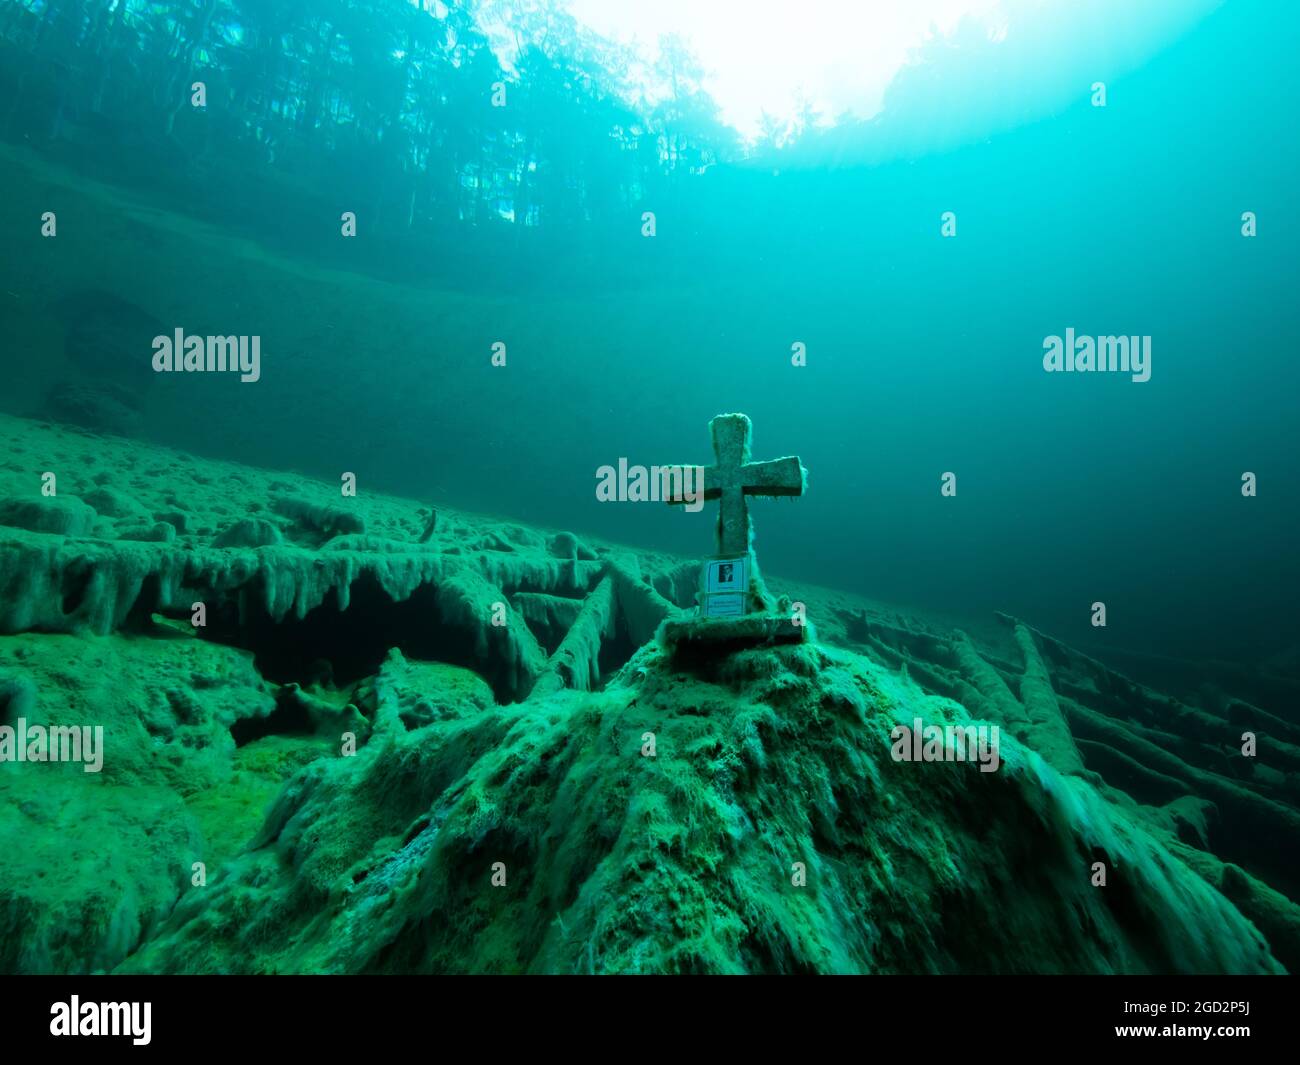 Cruz de piedra bajo el agua en un lago de montaña, buena visibilidad, agua clara y algunos troncos de árboles bajo el agua, reflejo de un bosque en la superficie del agua, Foto de stock